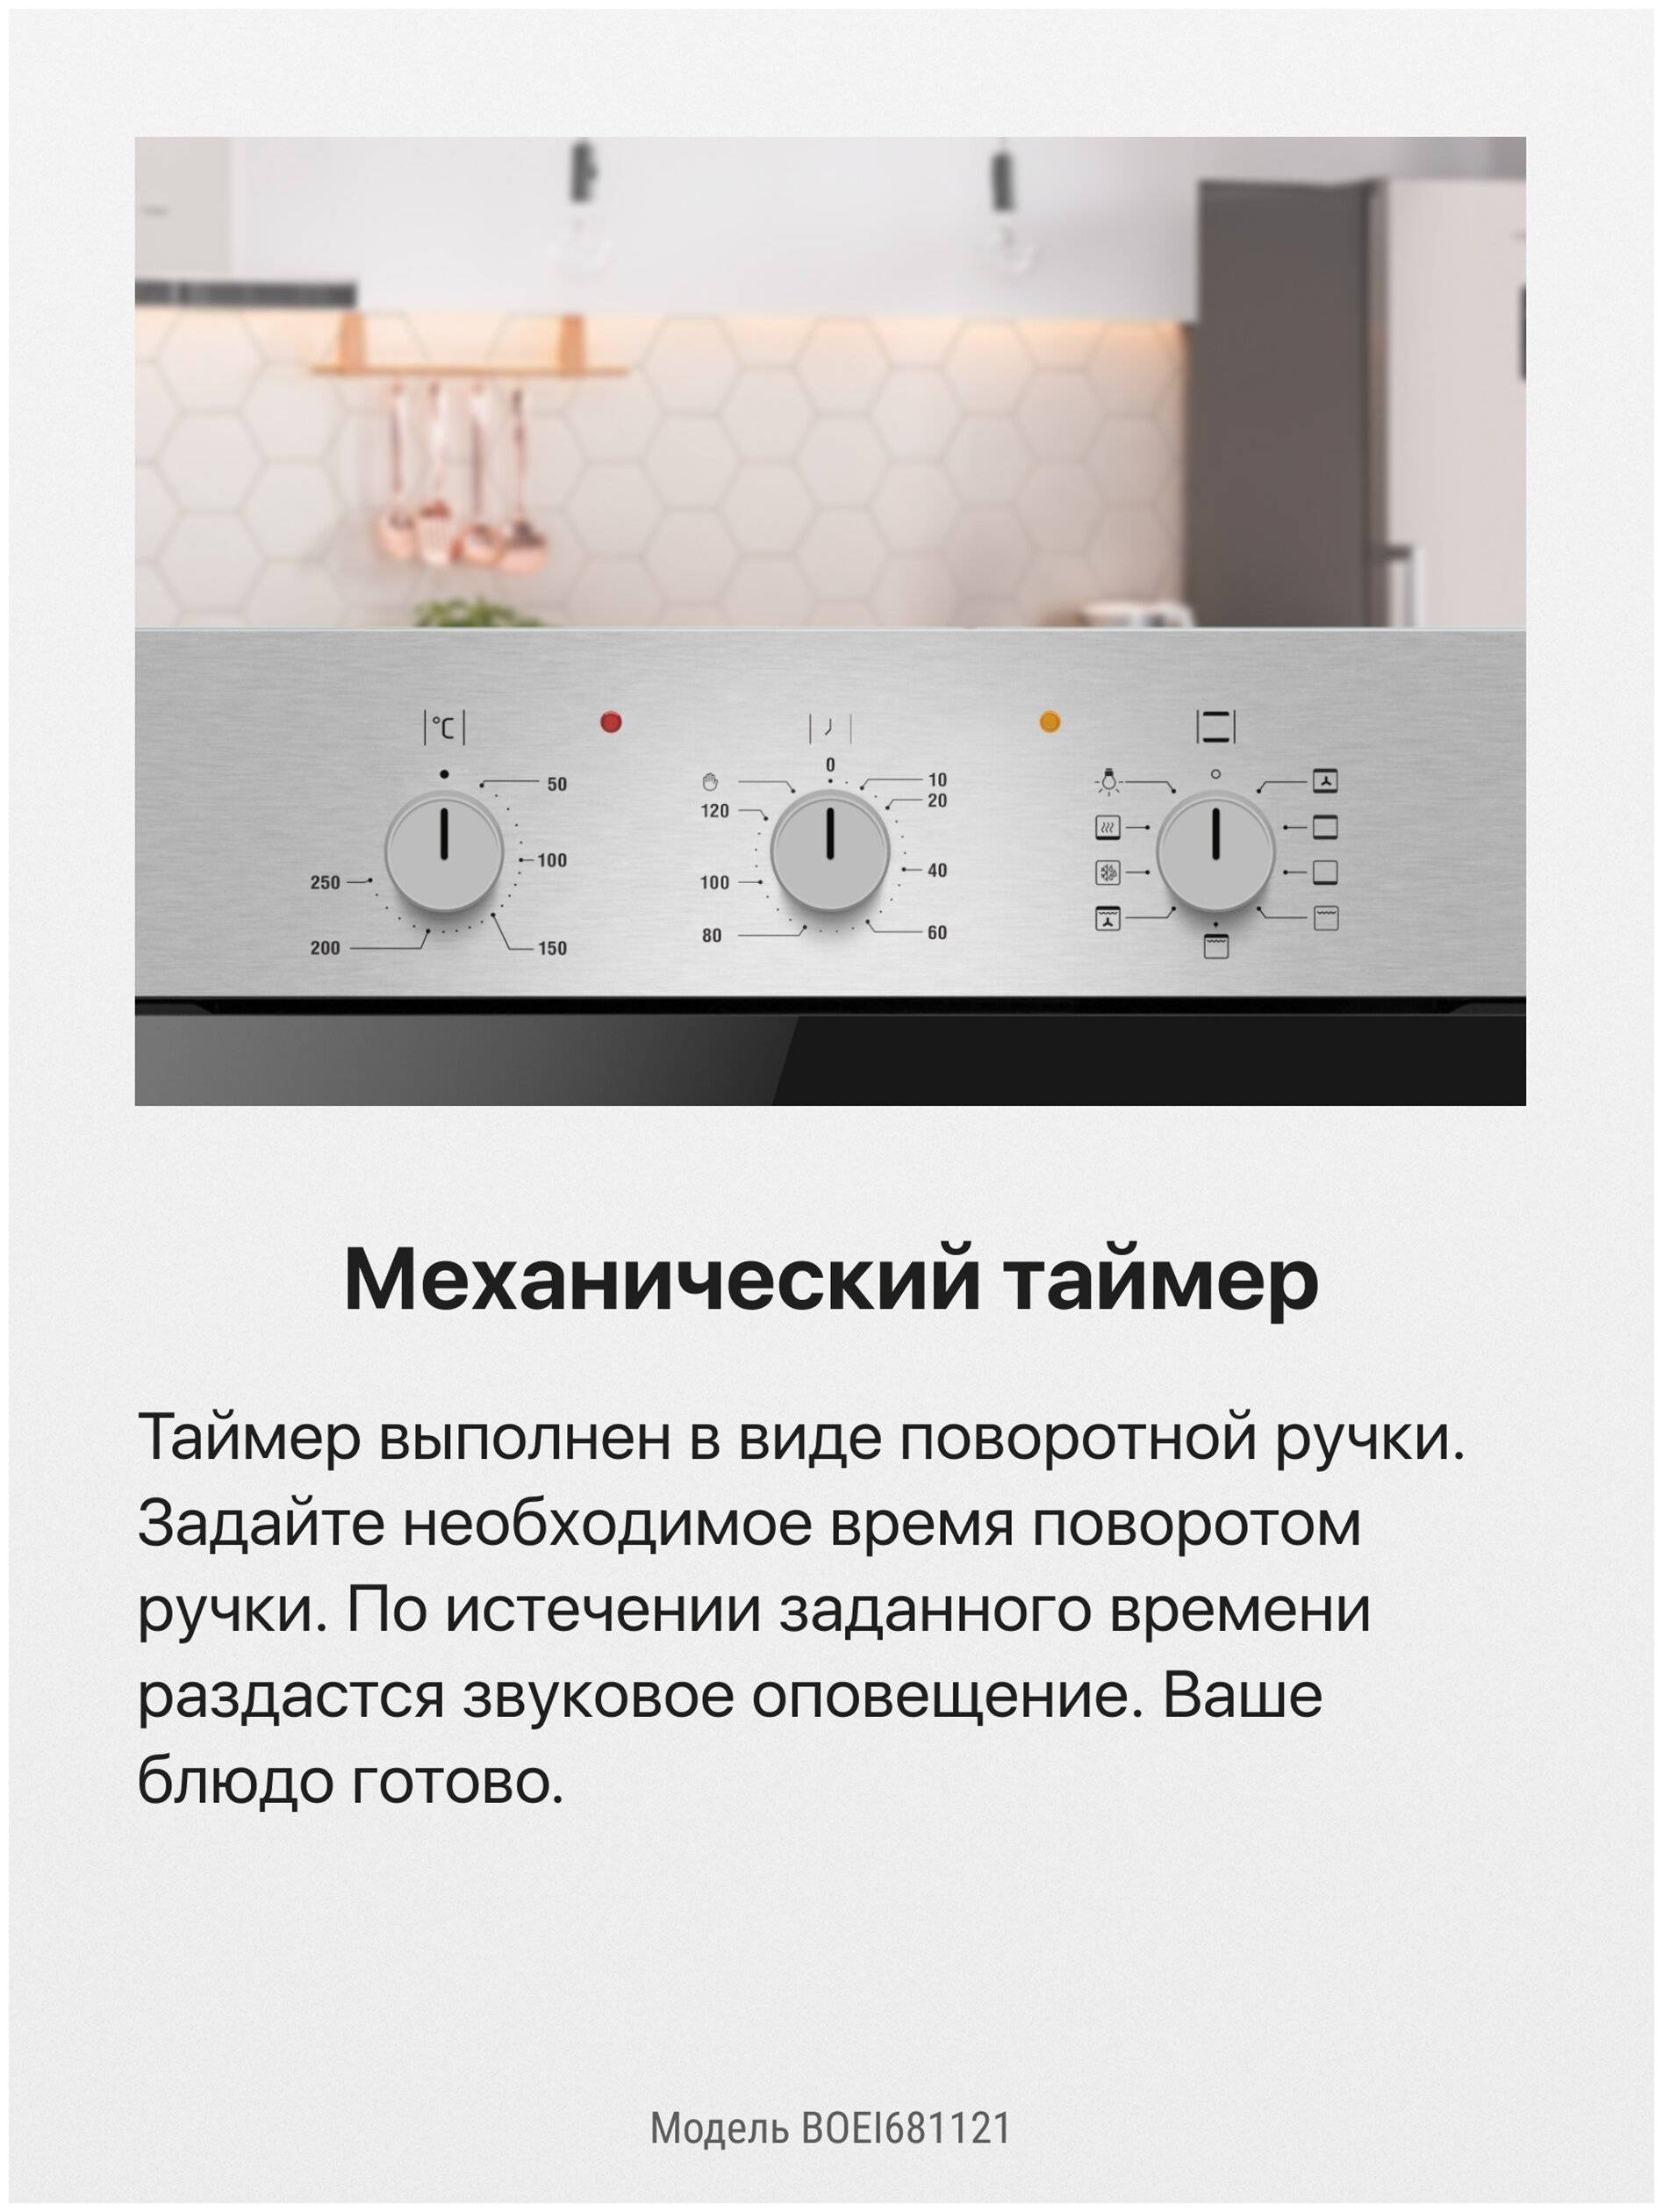 Как выбрать духовой электрический шкаф. отзывы экспертов и покупателей :: businessman.ru